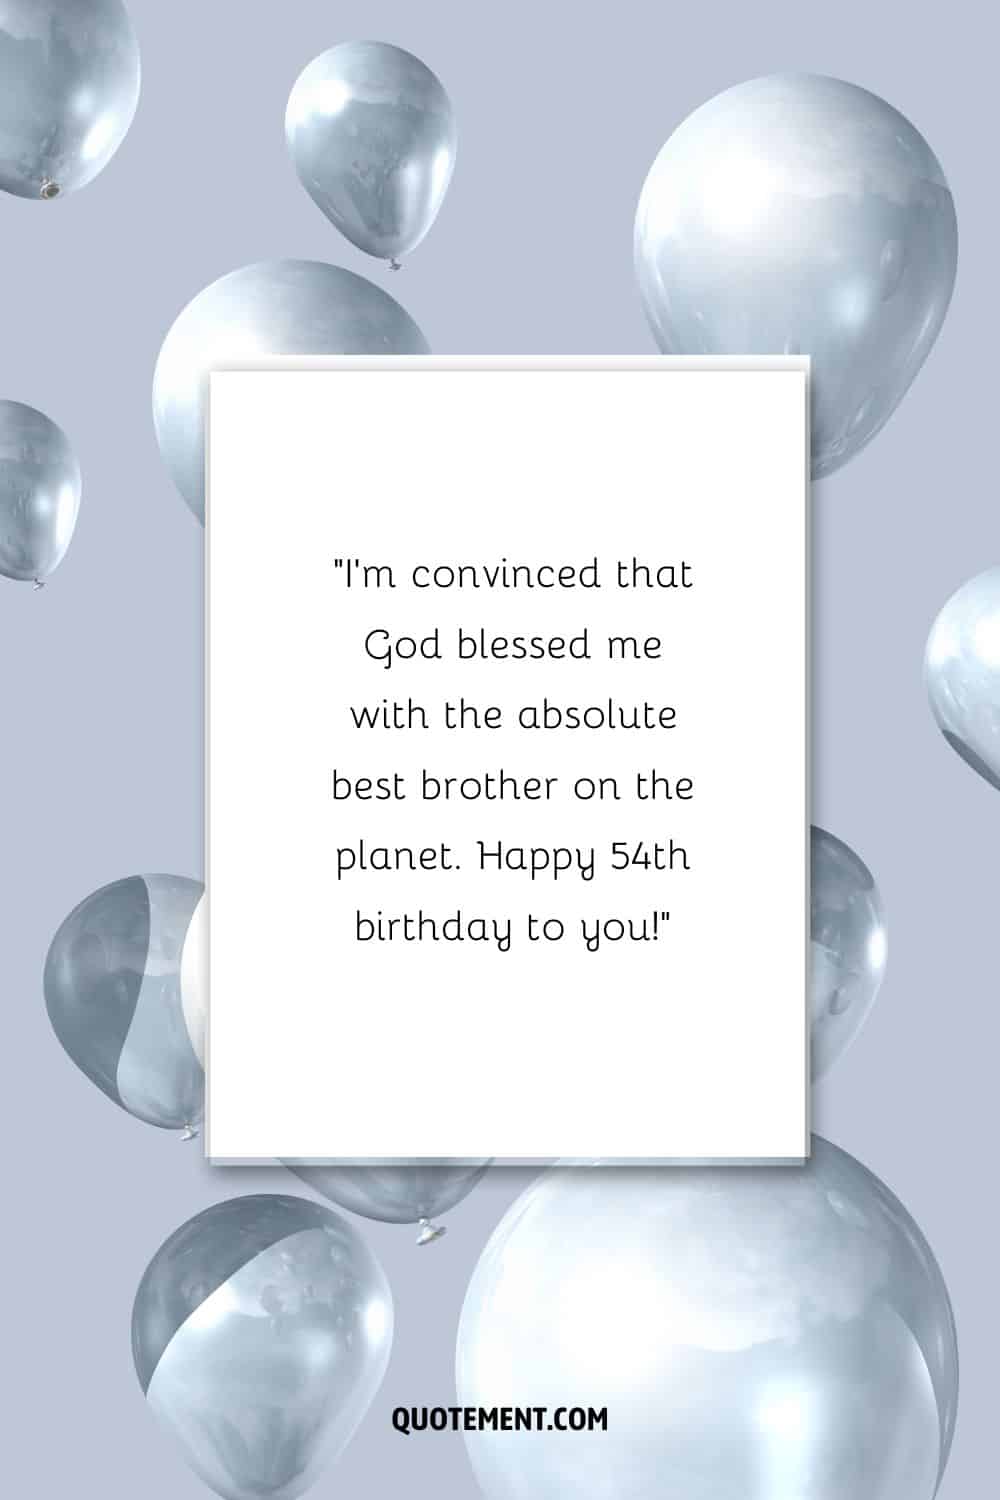 Mensaje de cumpleaños para un hermano que cumple 54 años y montones de globos plateados de fondo